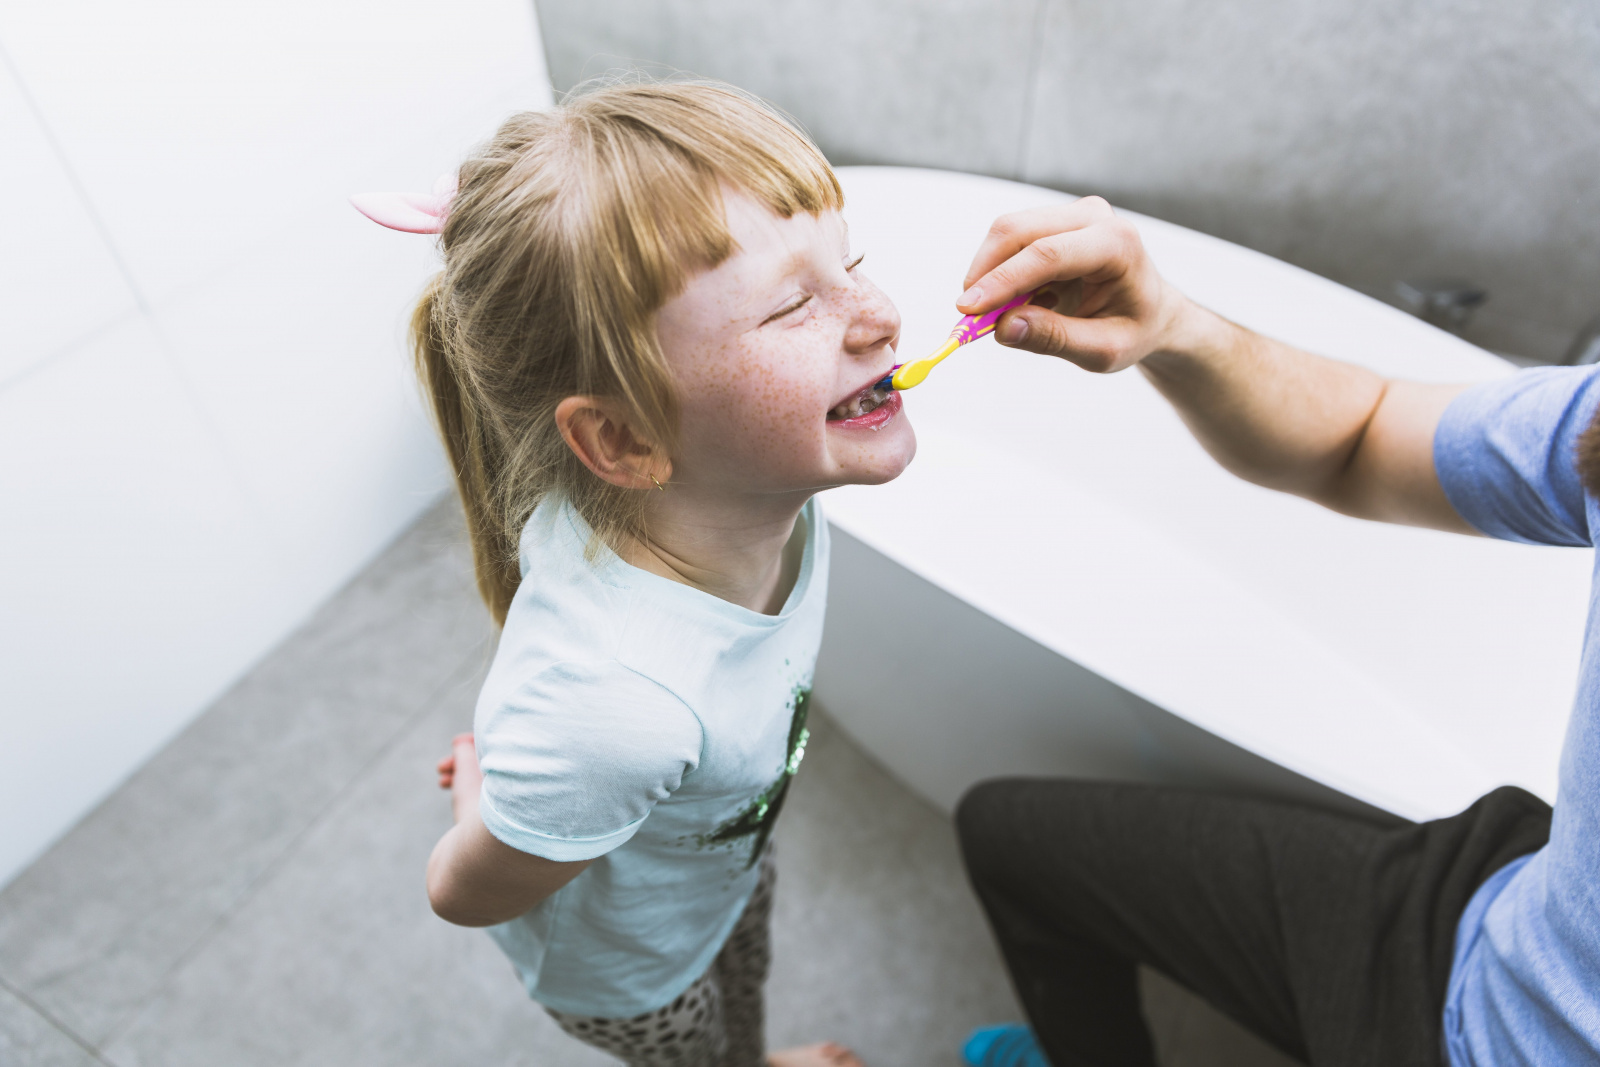 Период смены зубов у малыша: схема, примерные сроки процесса выпадения зубов у малышей, советы от врача по уходу за ротовой полостью.